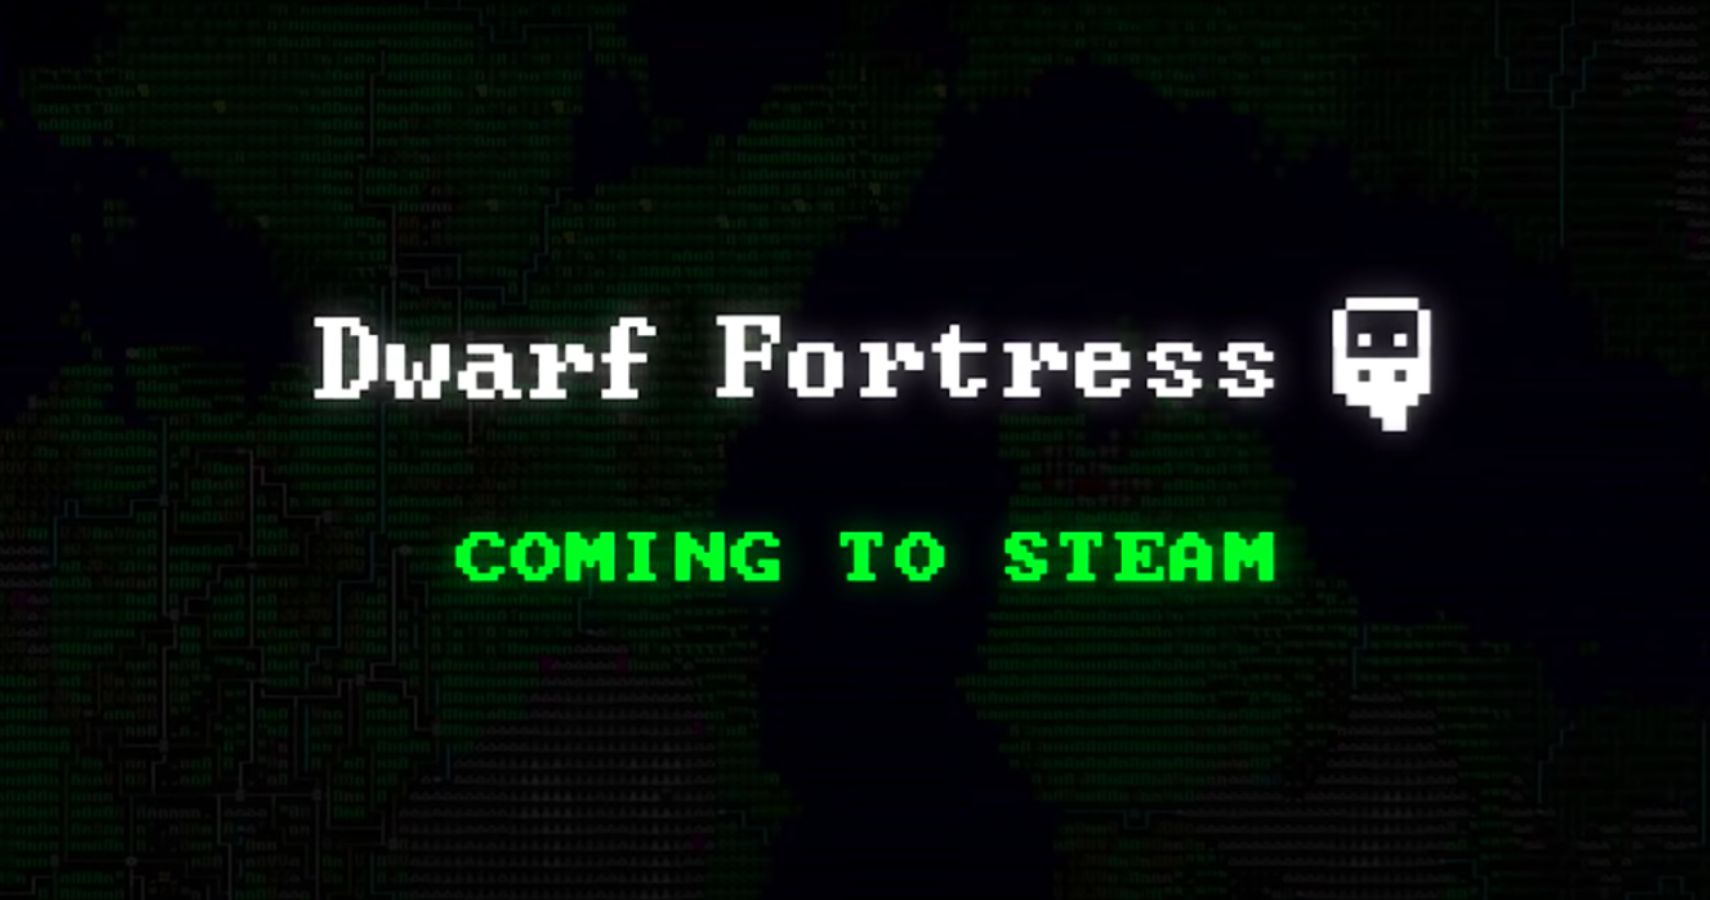 dwarf fortress steam current version